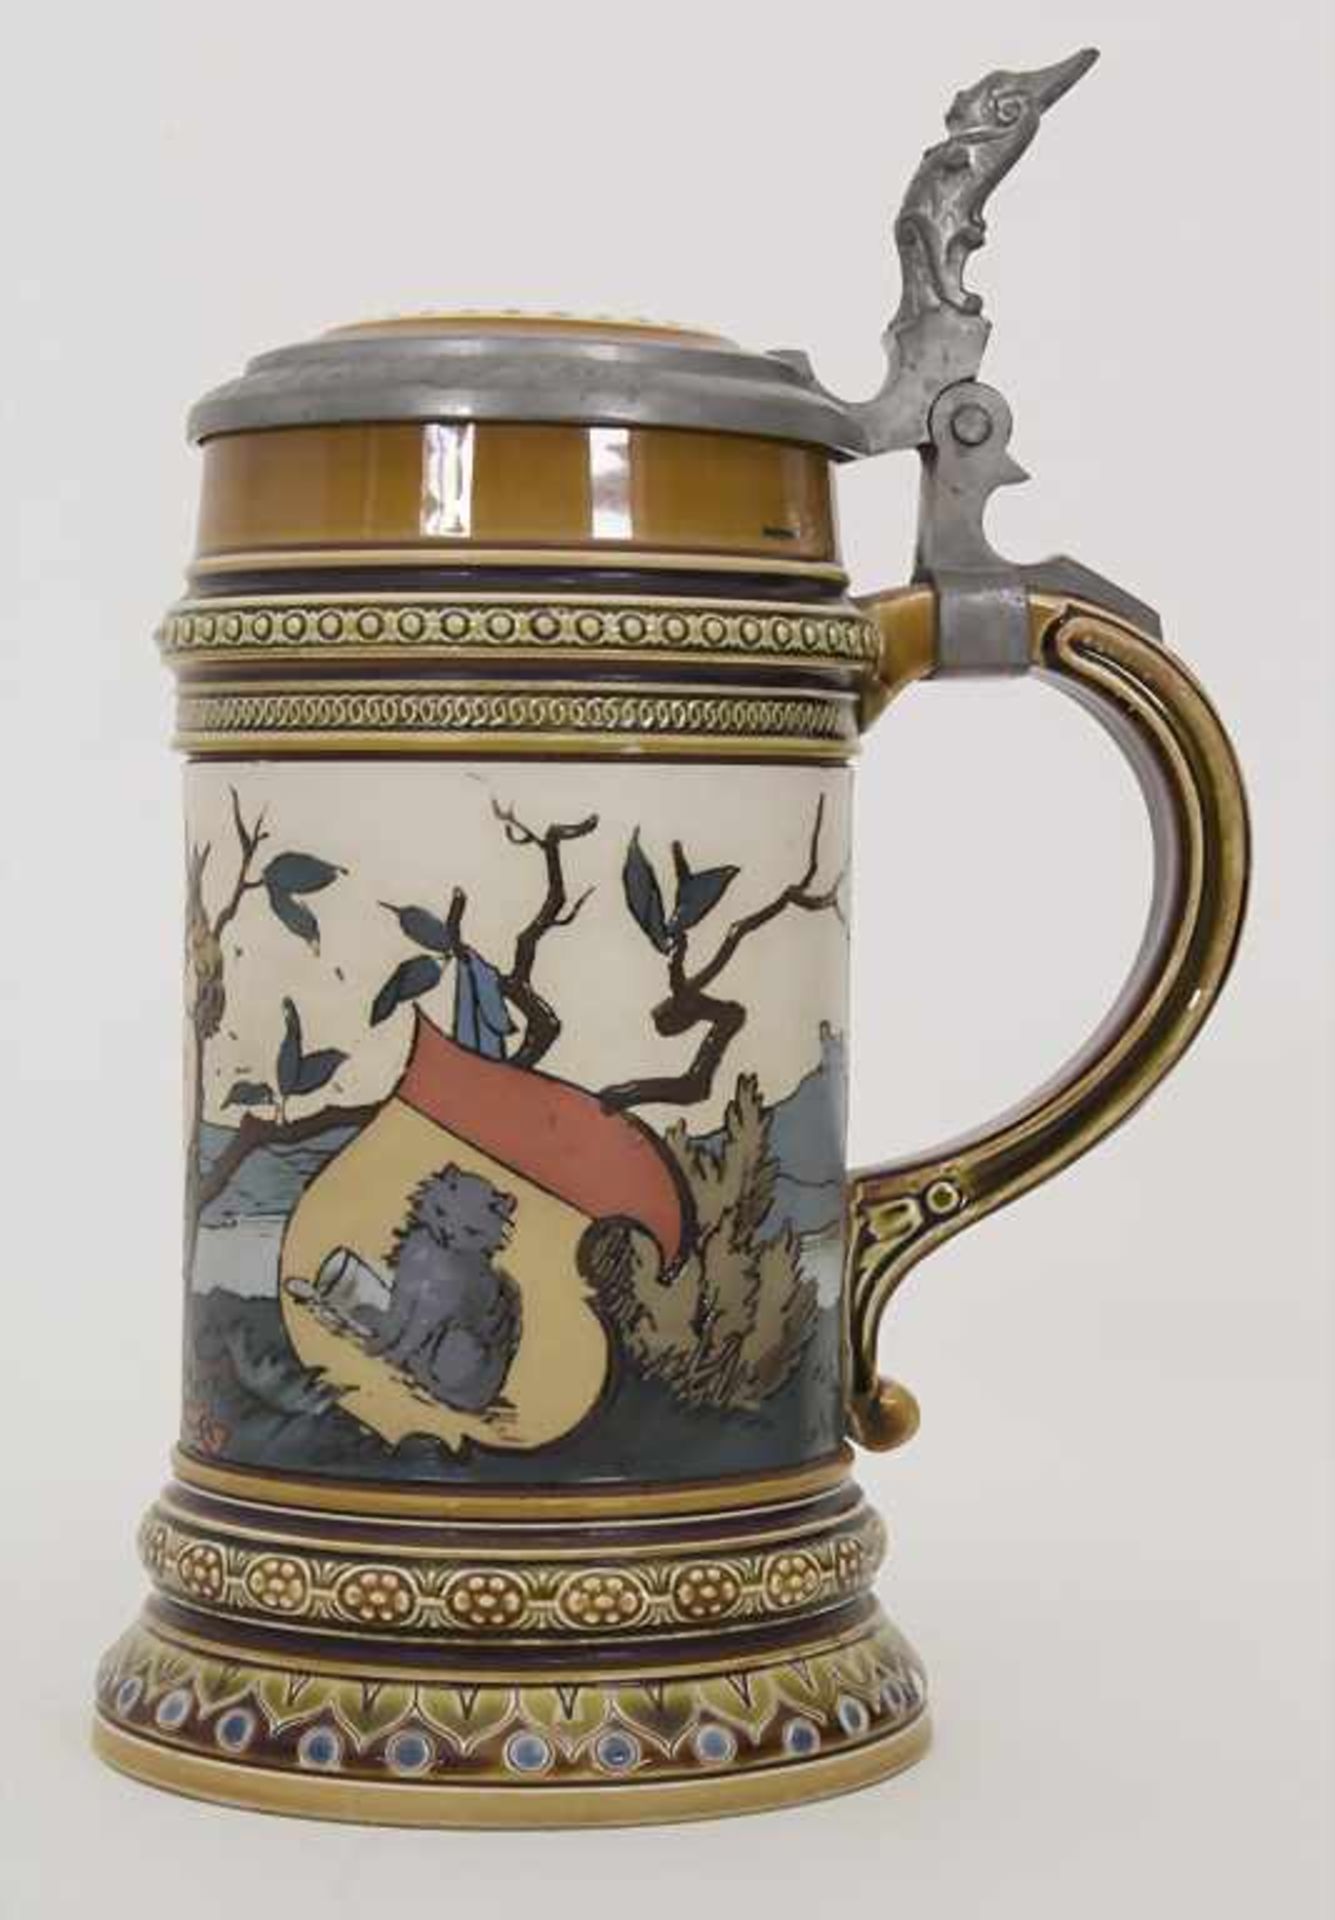 Bierkrug 0,5 L / A stoneware beer mug, Mettlach, Entwurf Christian Warth, um 1894 - Bild 2 aus 8